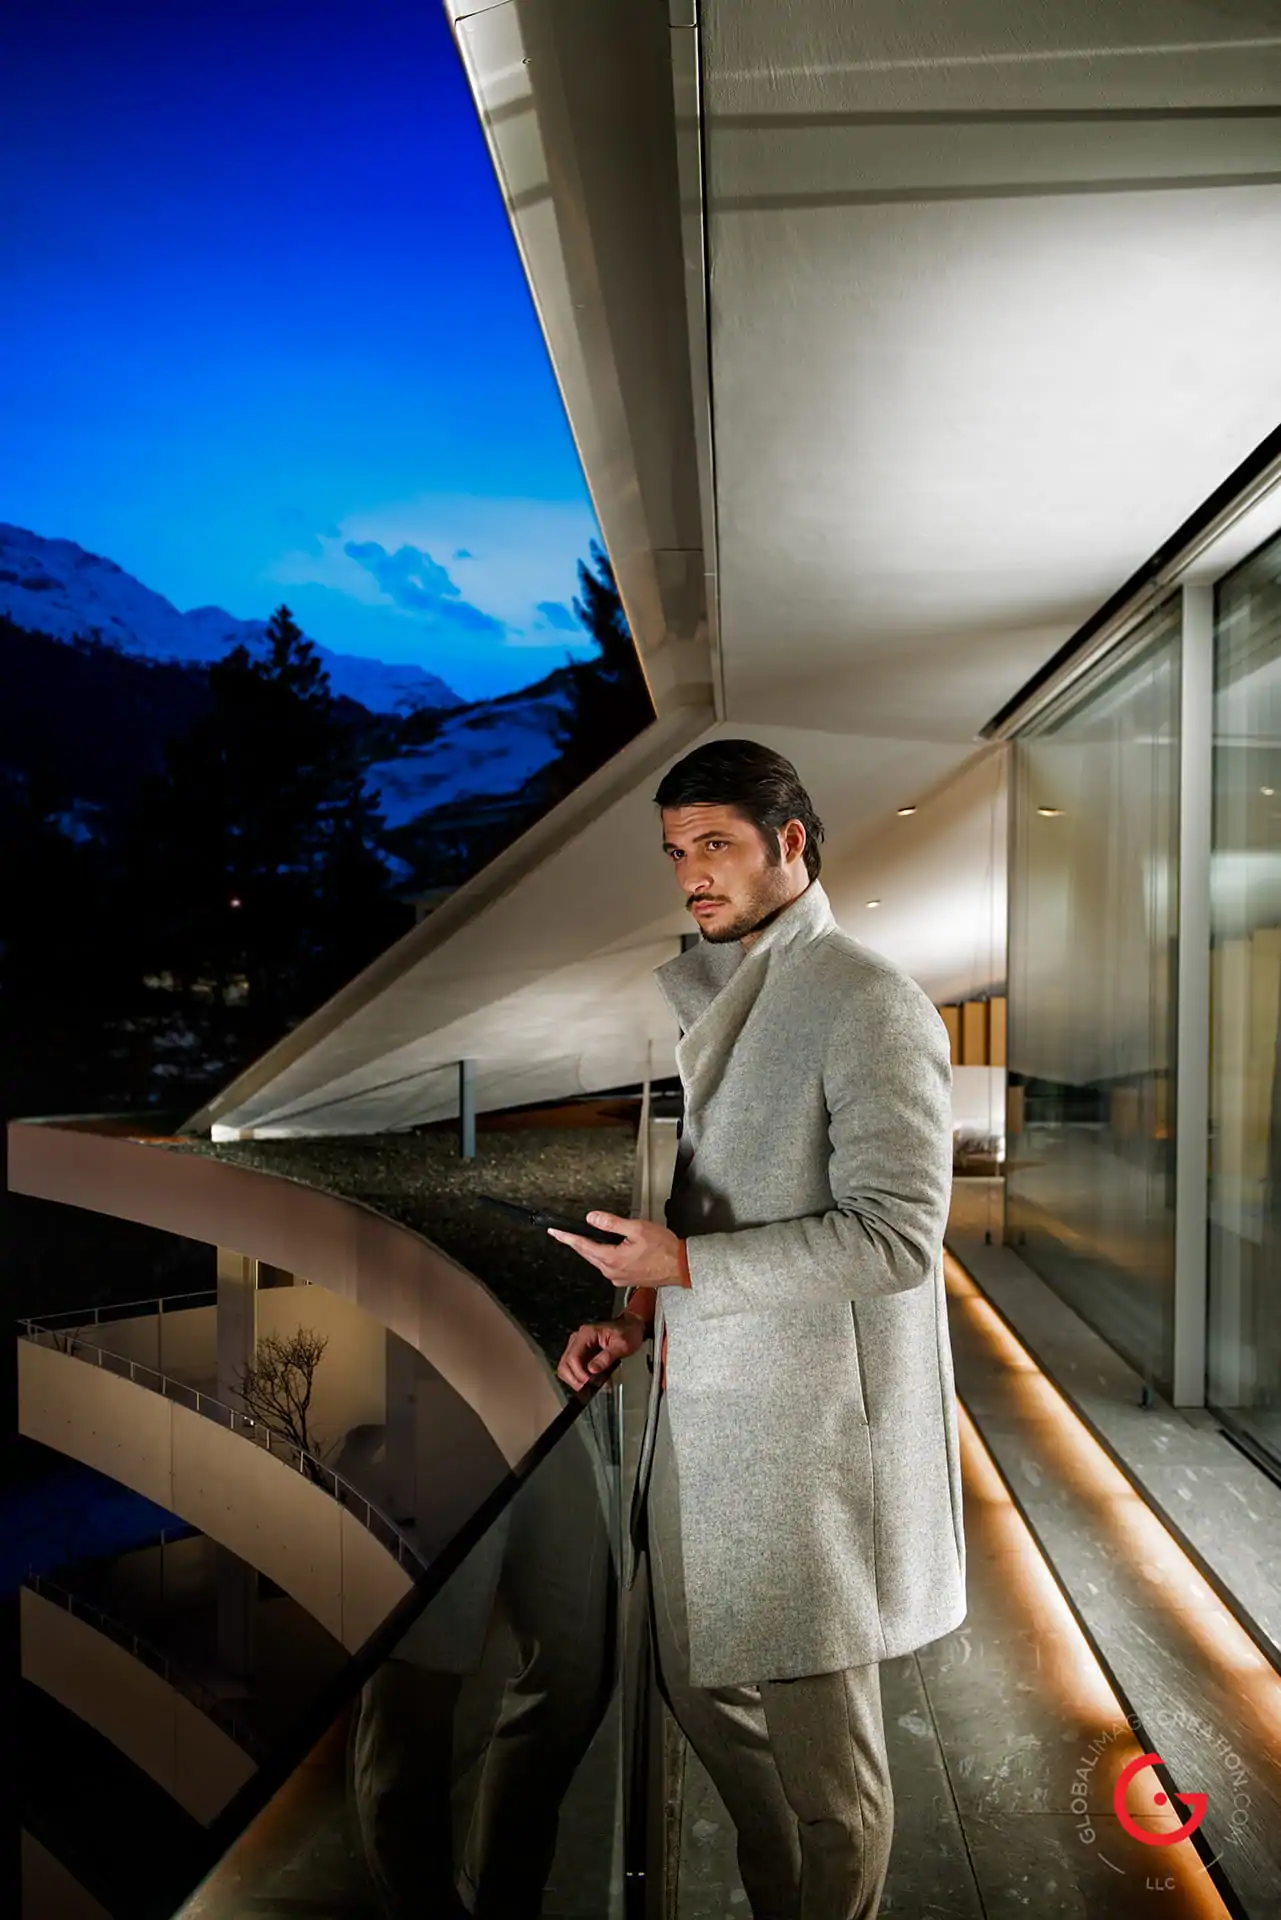 James Bond Style Man at Kengo Kuma 7132 Hotel Suite, Hotel Photographer - Vals Switzerland